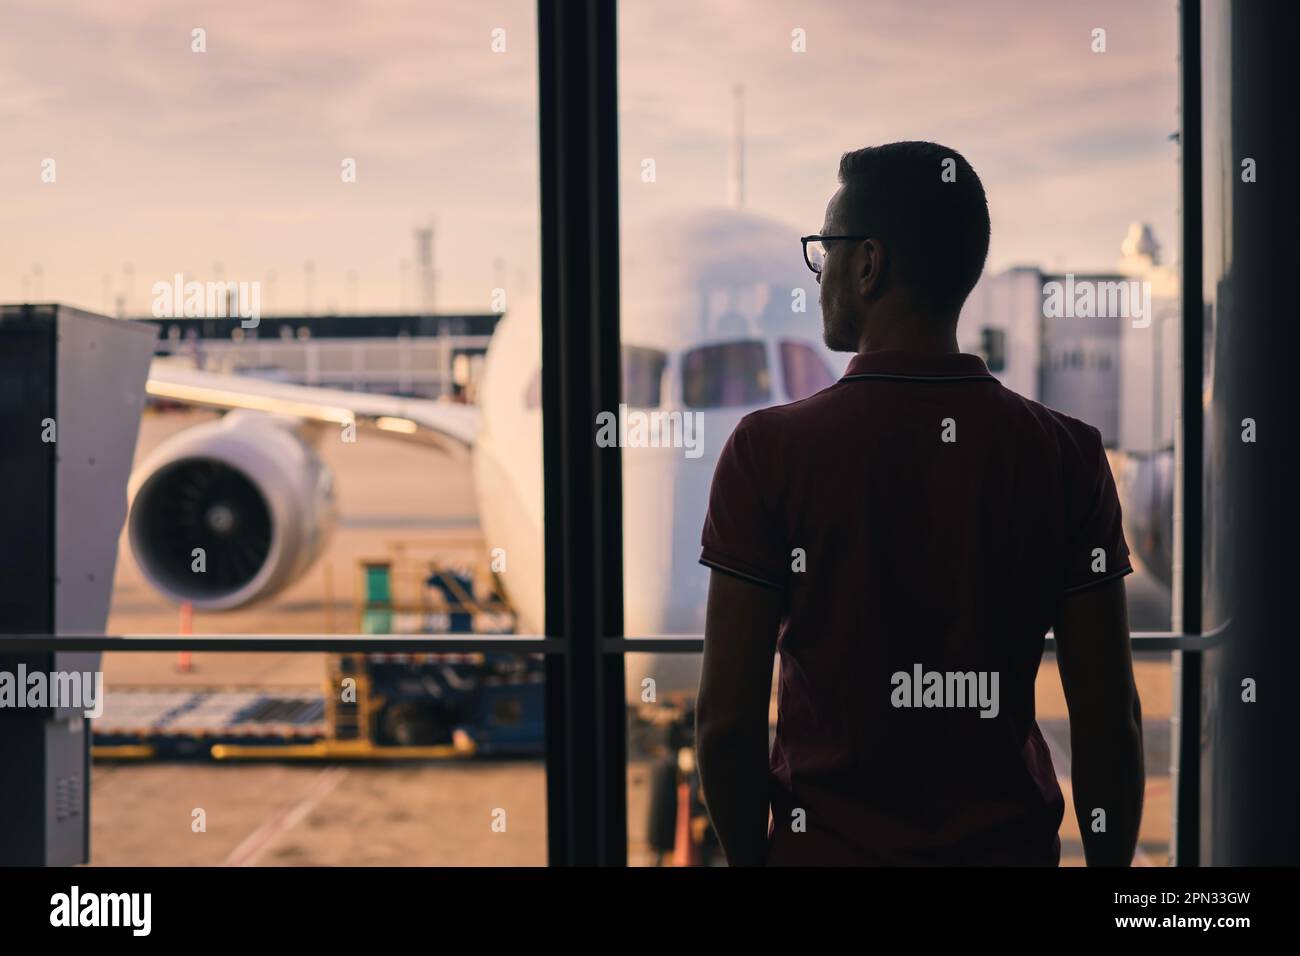 Le voyageur regarde par la fenêtre de l'aéroport à l'avion. Silhouette de l'homme en attente de son vol. Banque D'Images